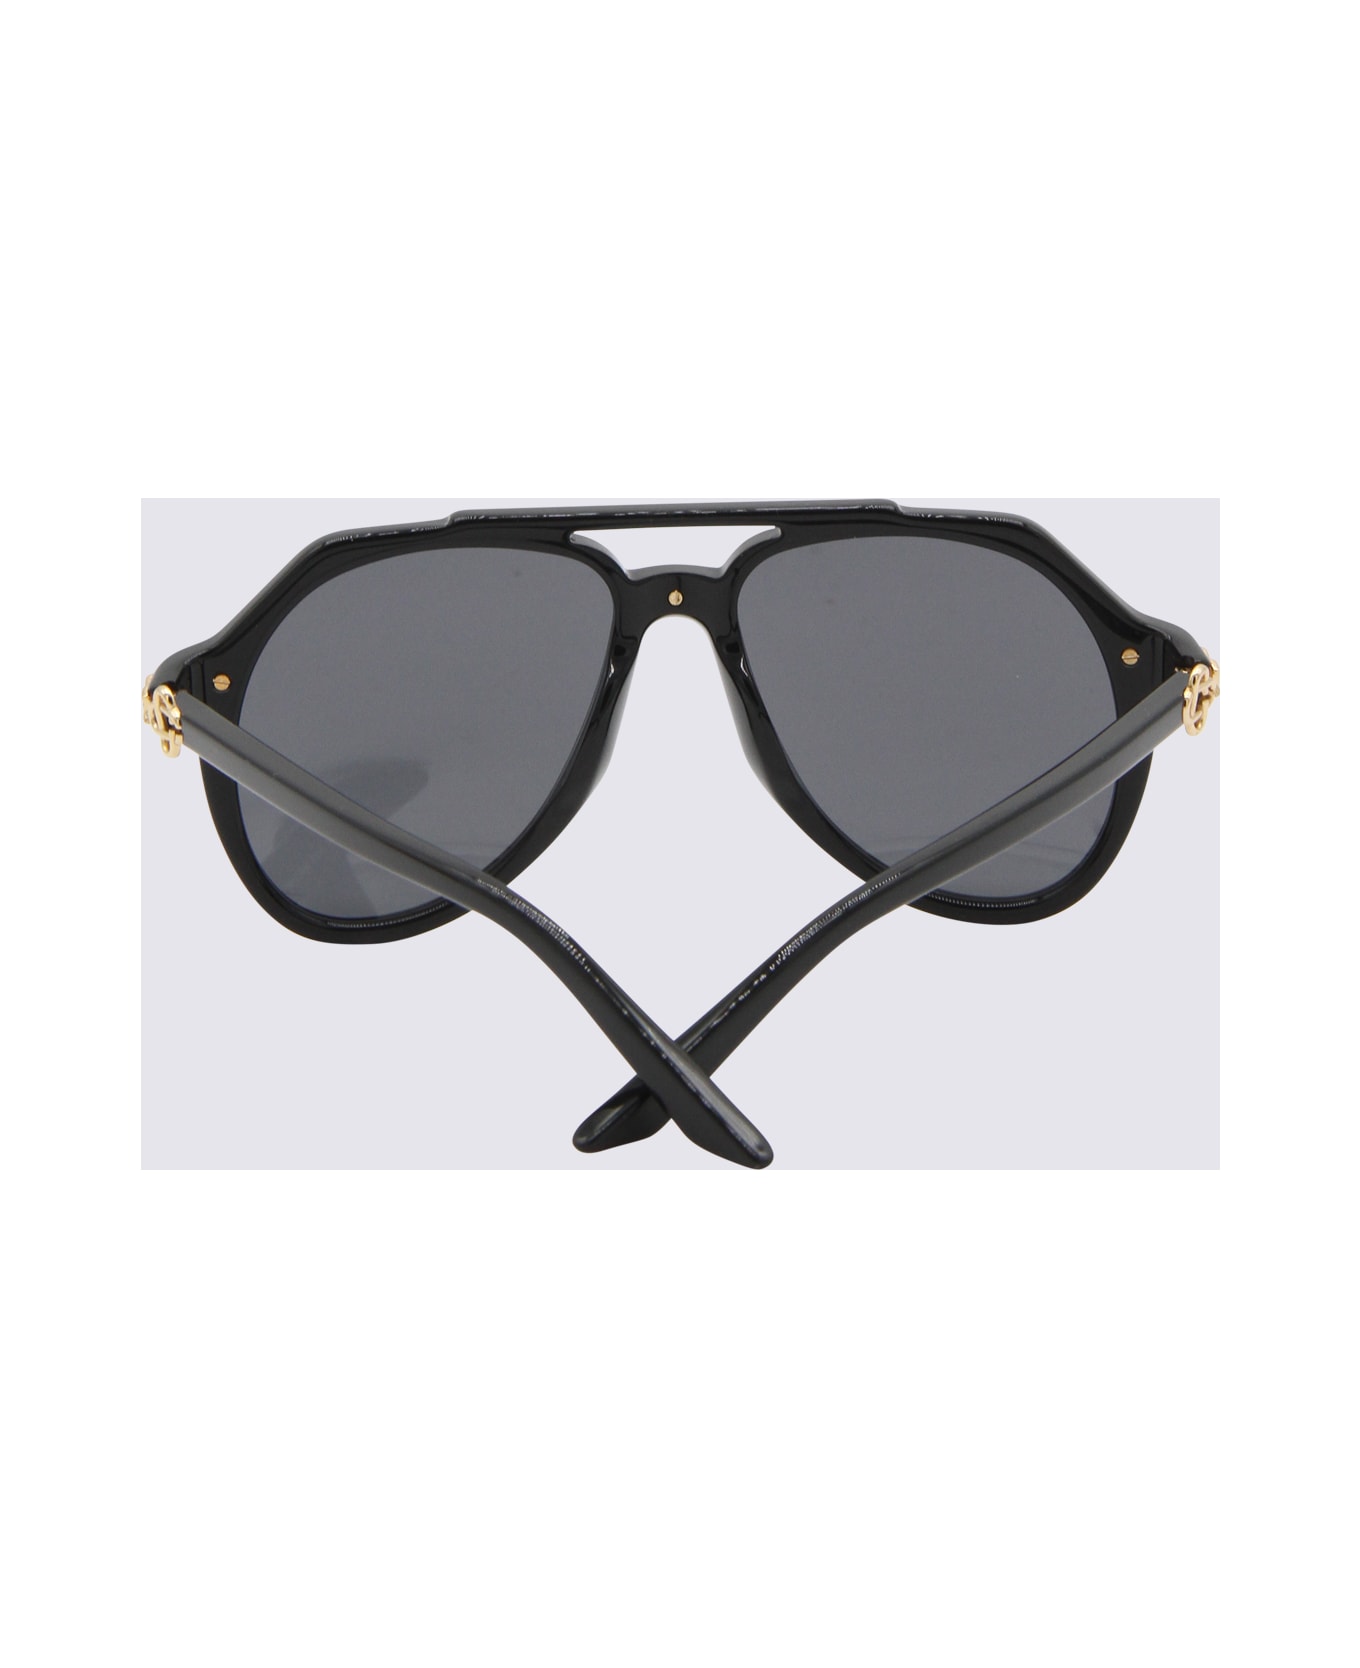 Casablanca Black Sunglasses - Black